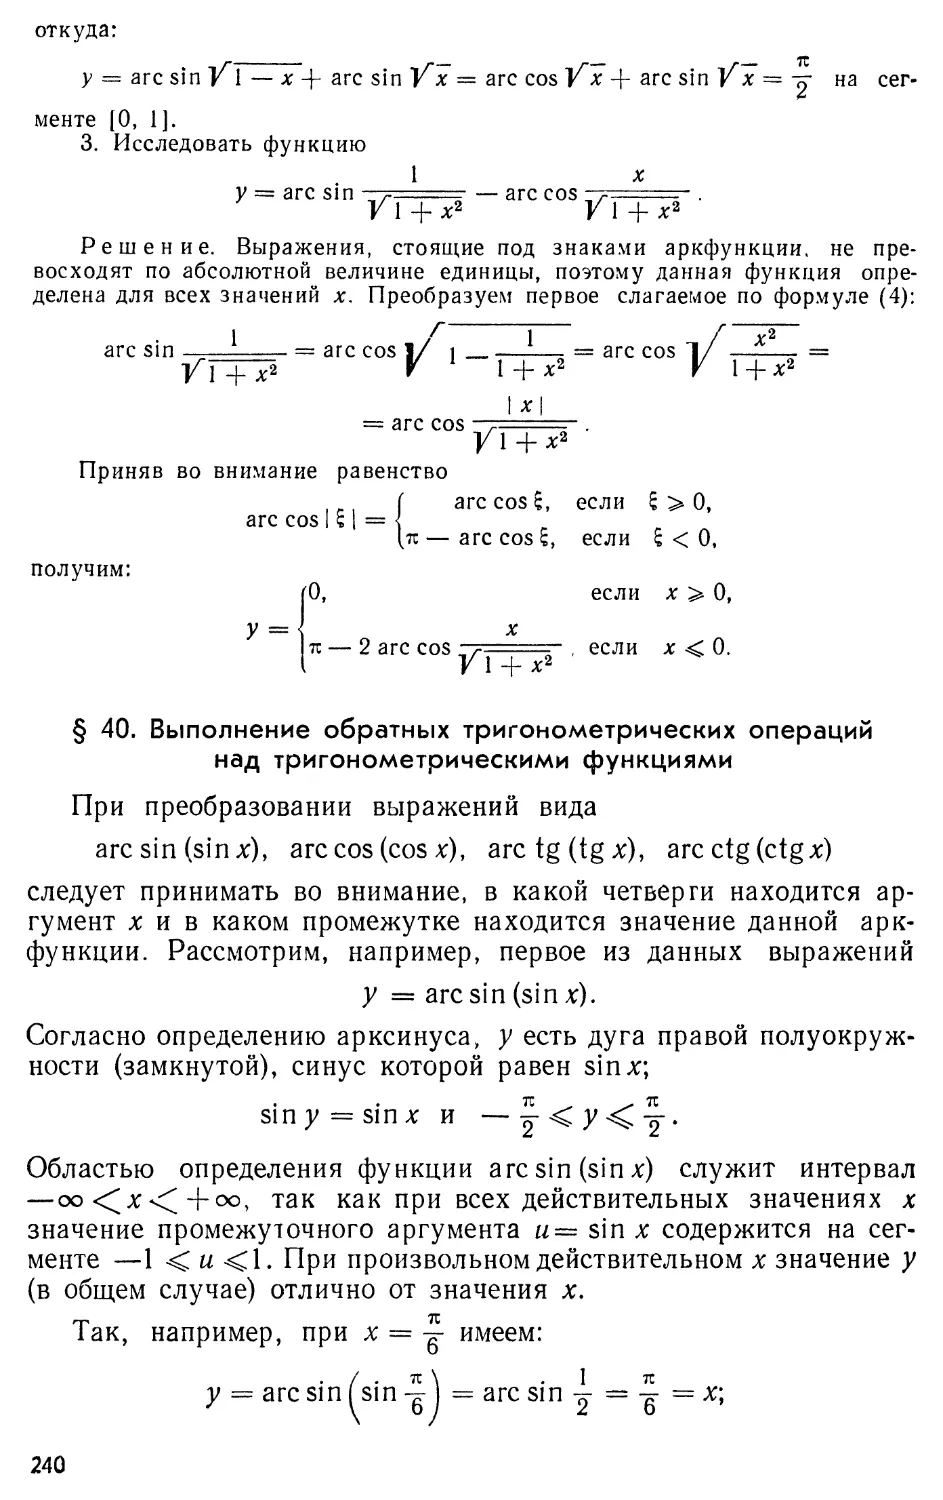 § 40. Выполнение обратных тригонометрических операций над тригонометрическими функциями